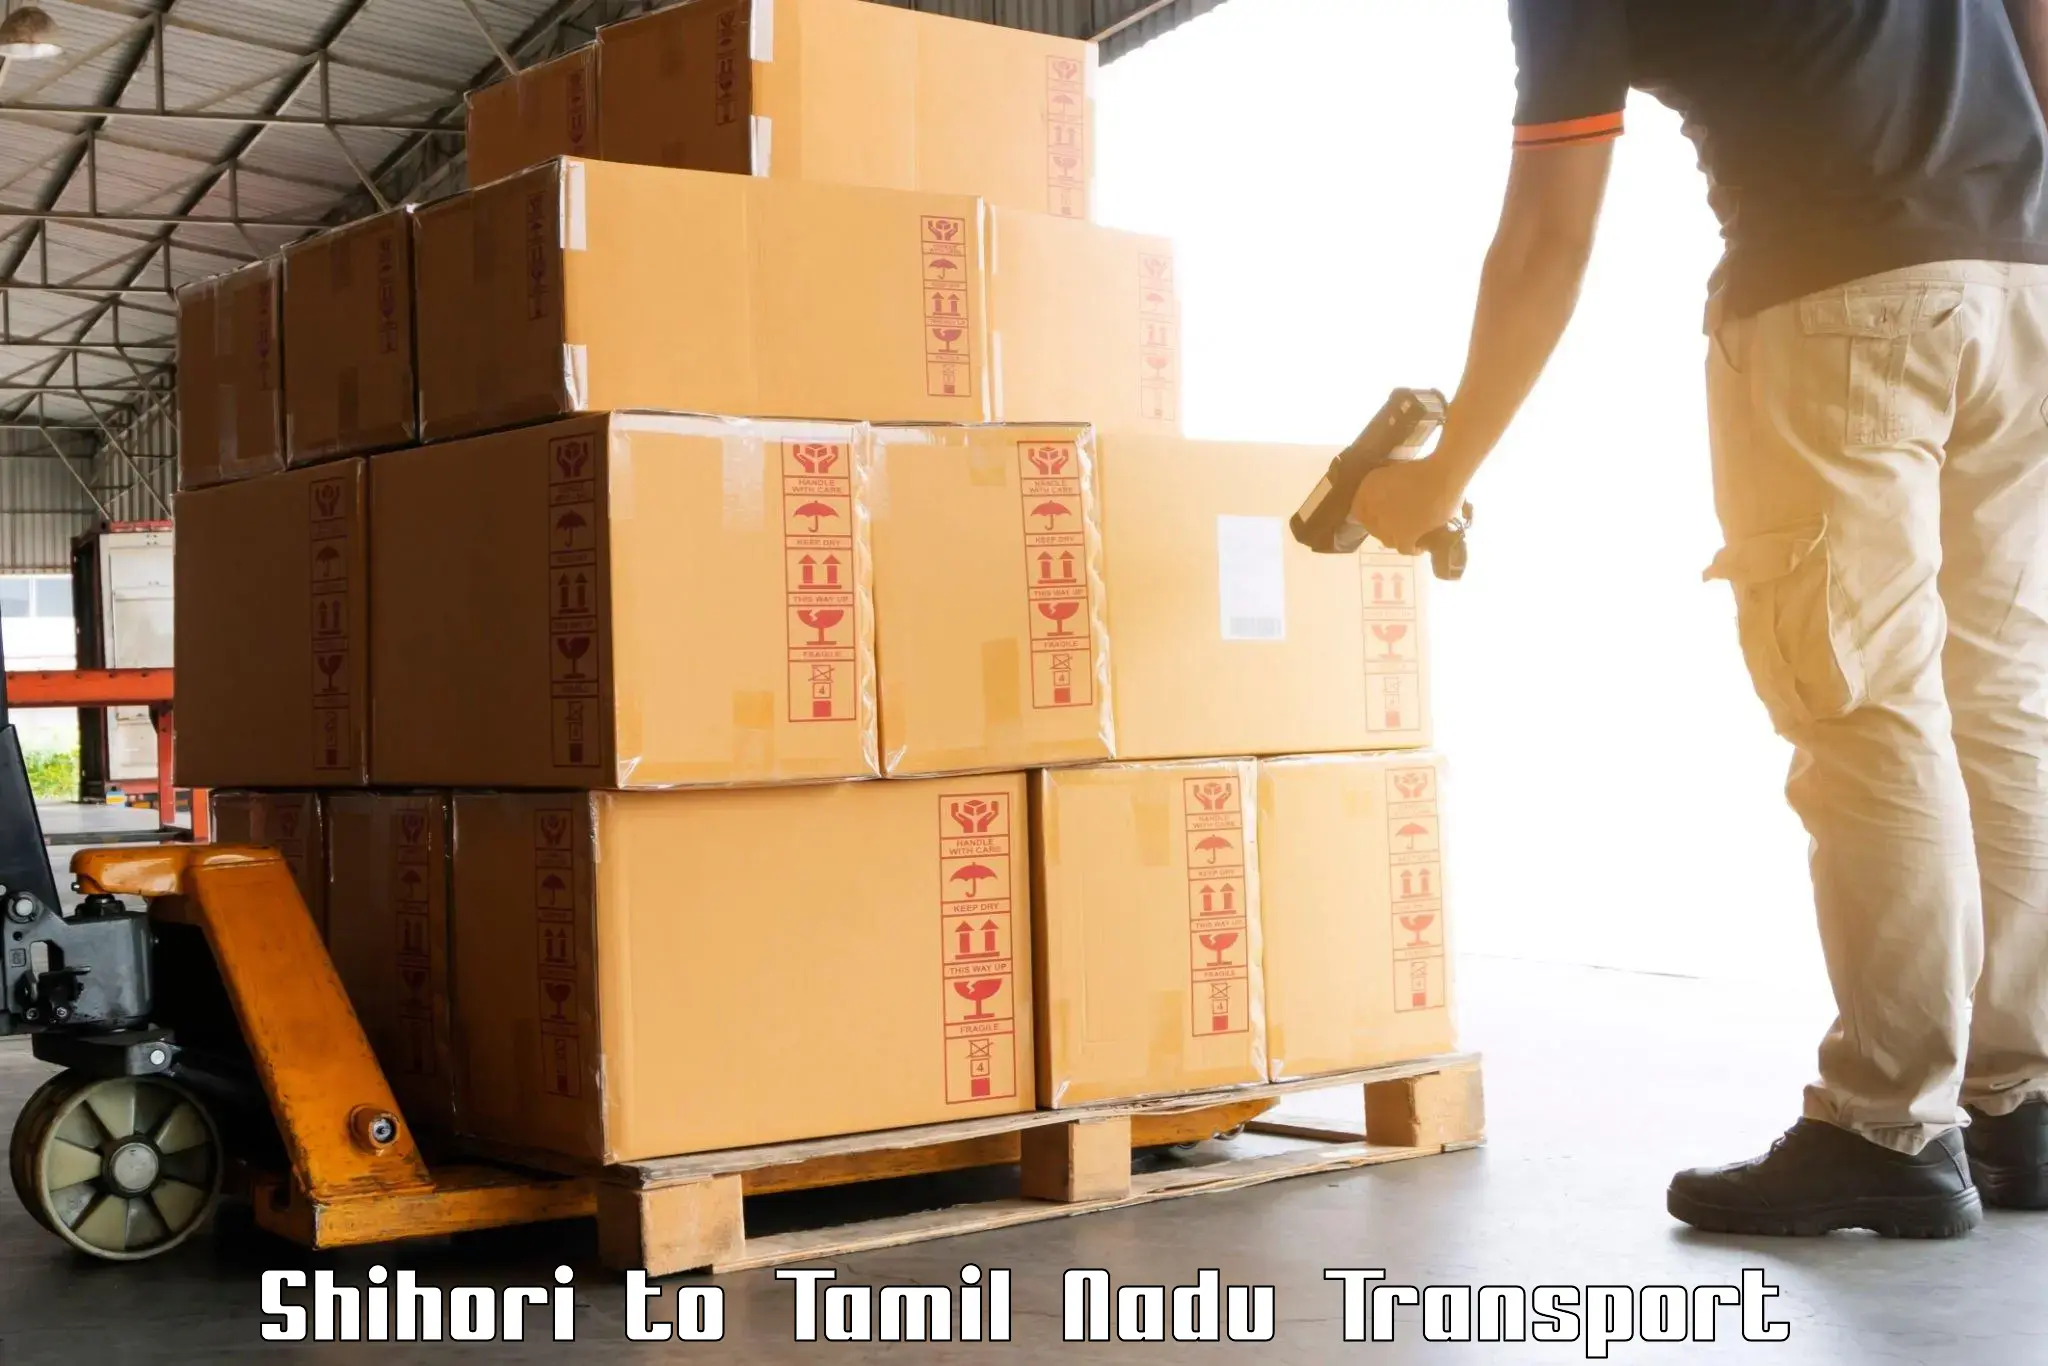 Nearest transport service Shihori to Tirunelveli